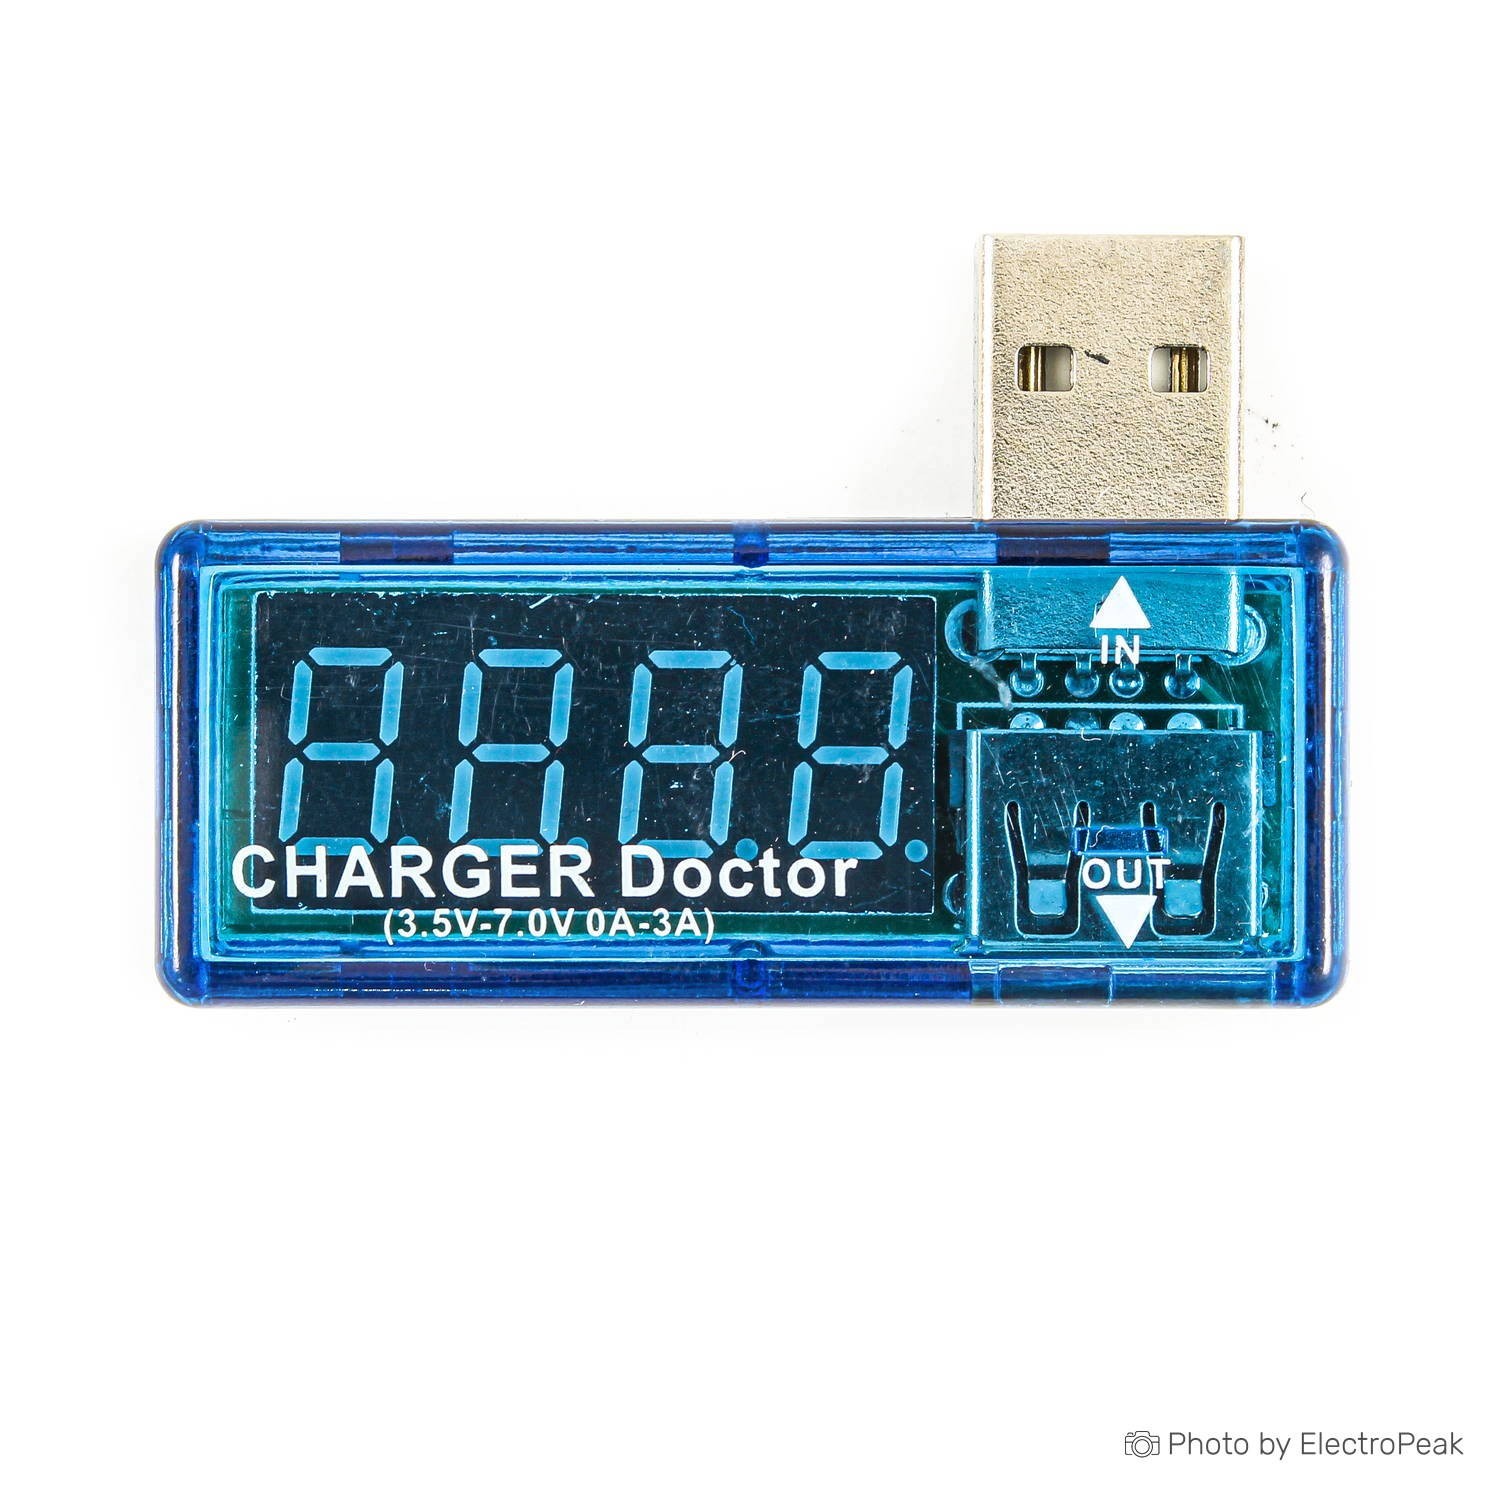 Buy USB Charger Doctor: A Digital Voltmeter Ammeter Online at Best Price